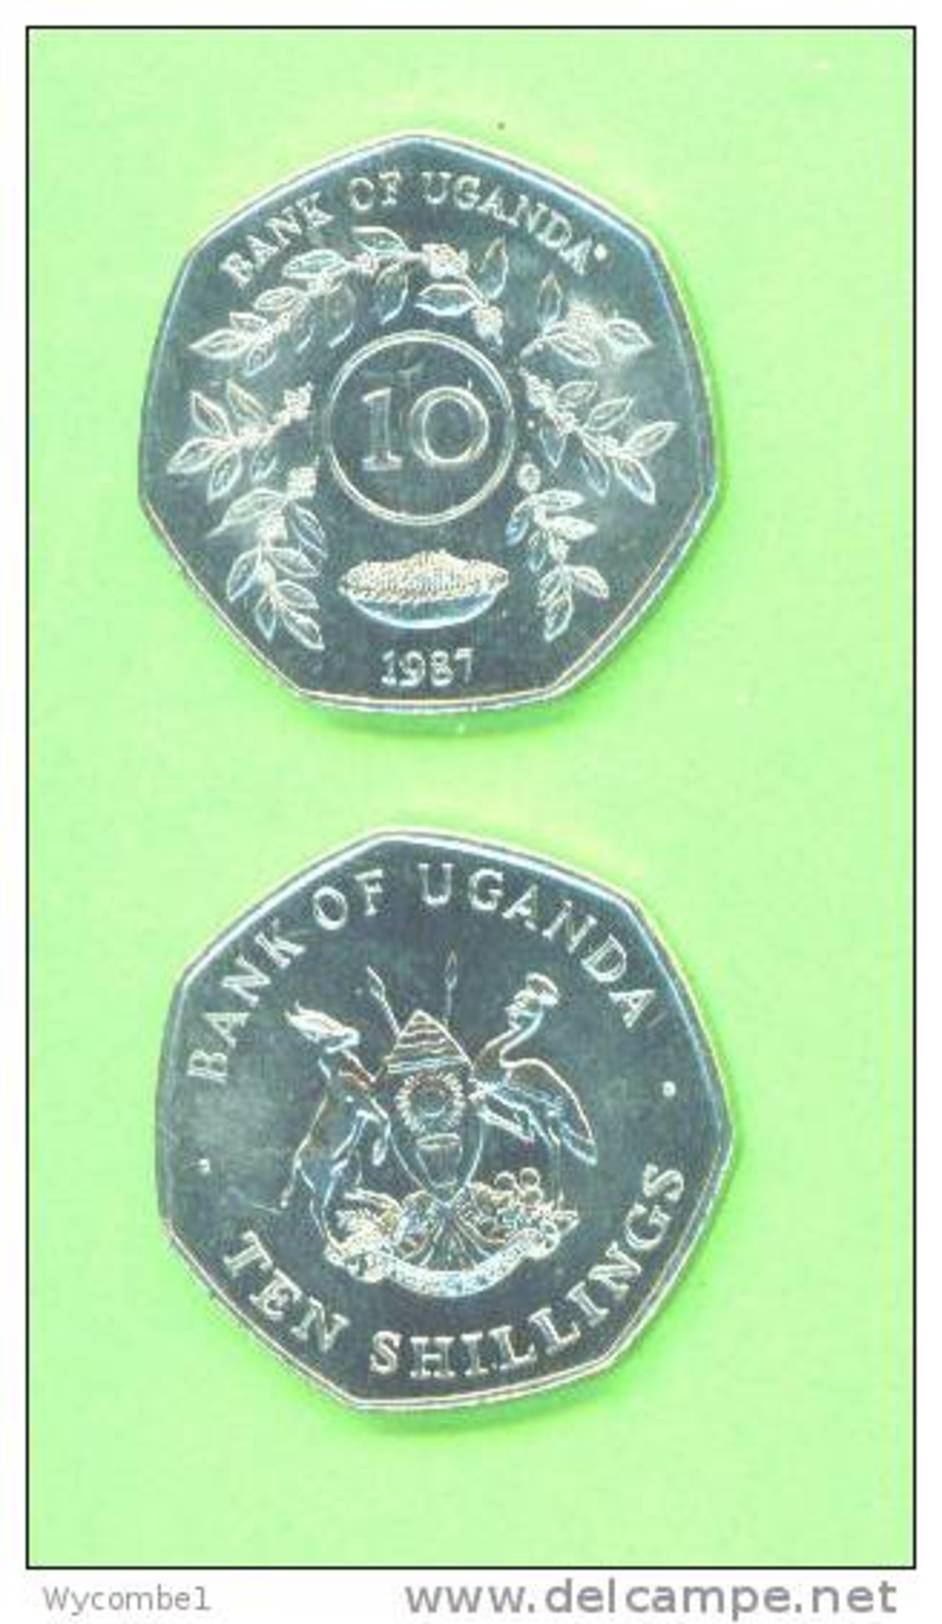 UGANDA - 1987 10 Shillings UNC - Uganda